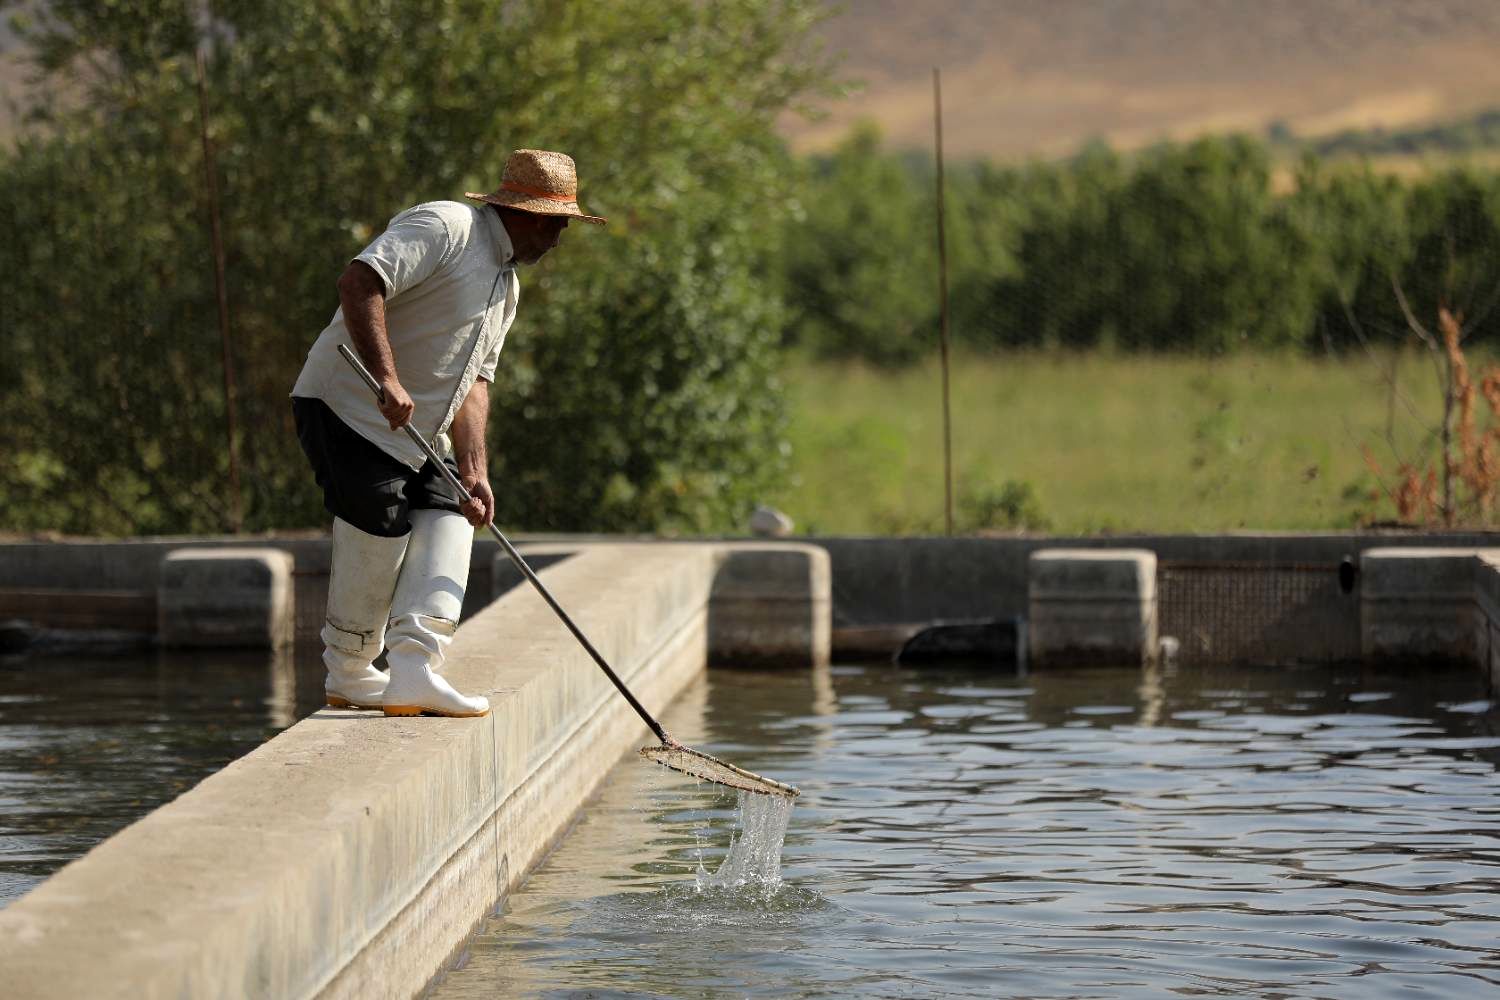  پرورش ماهیان سردآبی در استان فارس با حمایت بنیاد برکت شروع شد